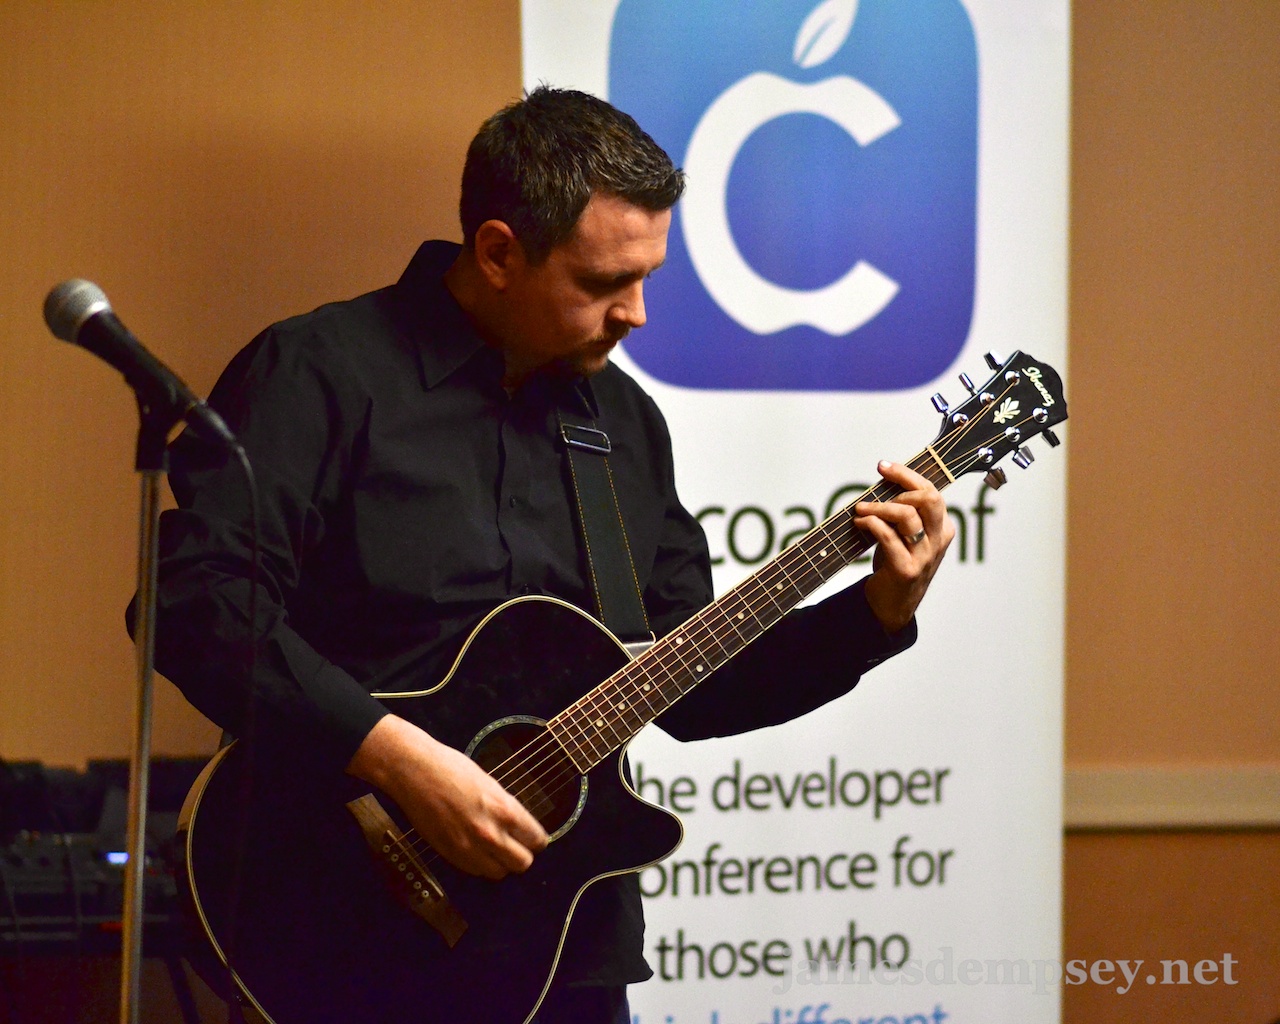 Ben Scheirman playing guitar